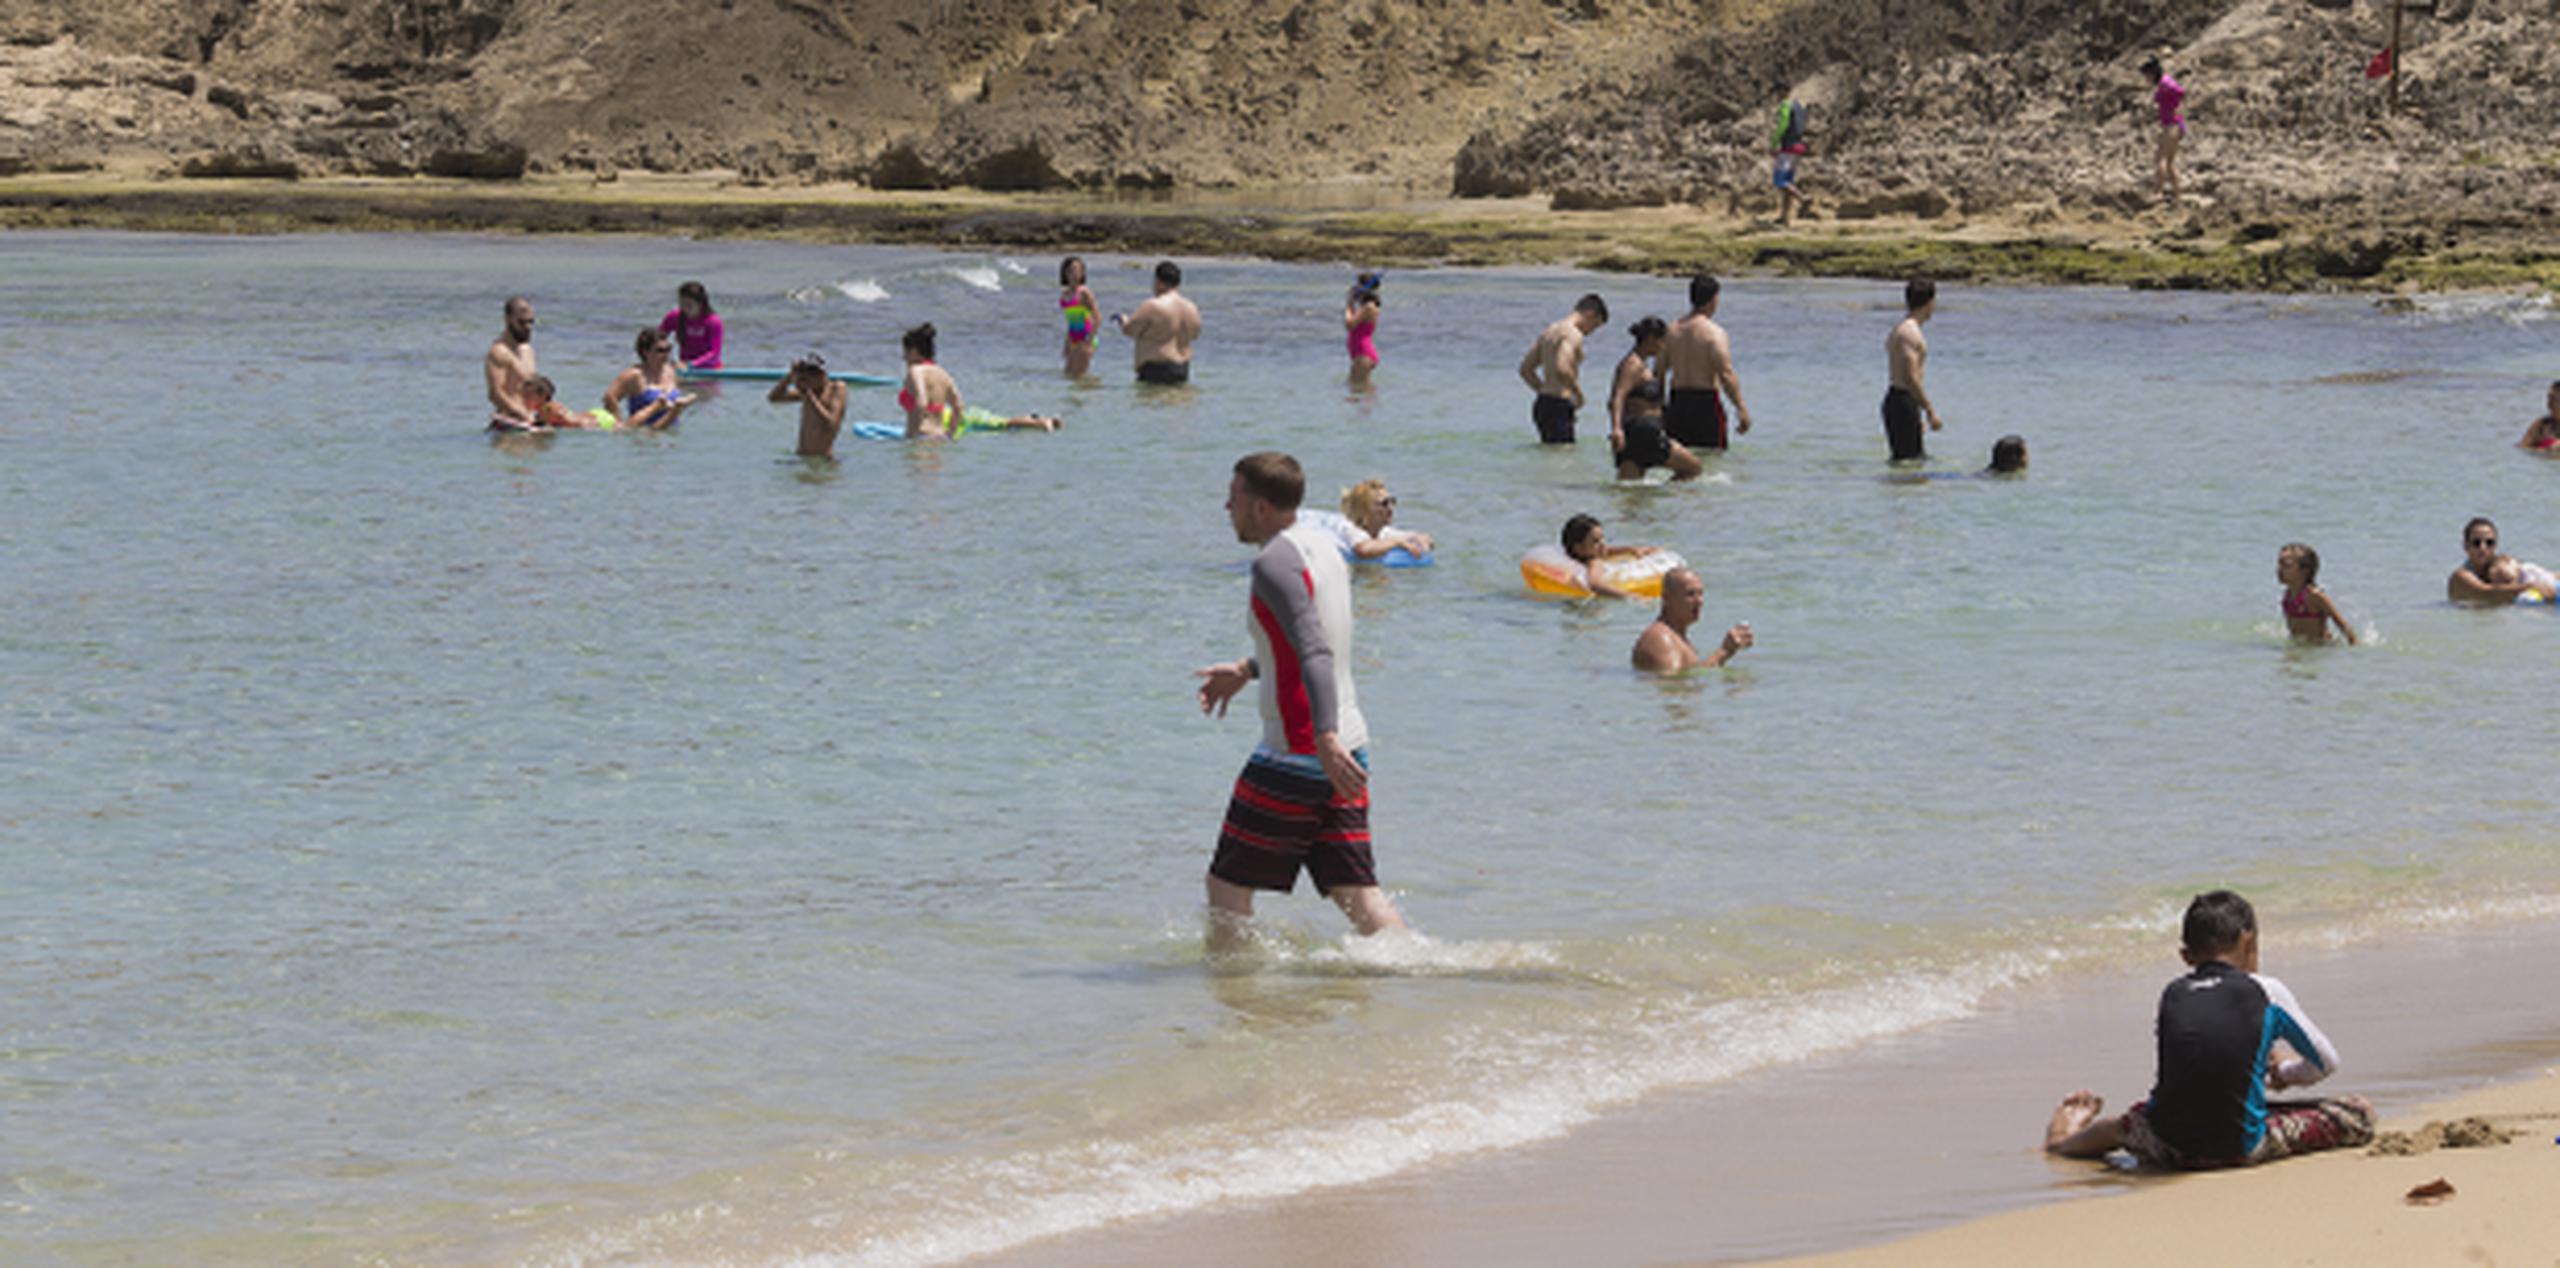 Según Caraballo, en Puerto Rico existen sobre 1,200 playas, de las cuales “alrededor de 1,100 son peligrosas”. (Archivo)